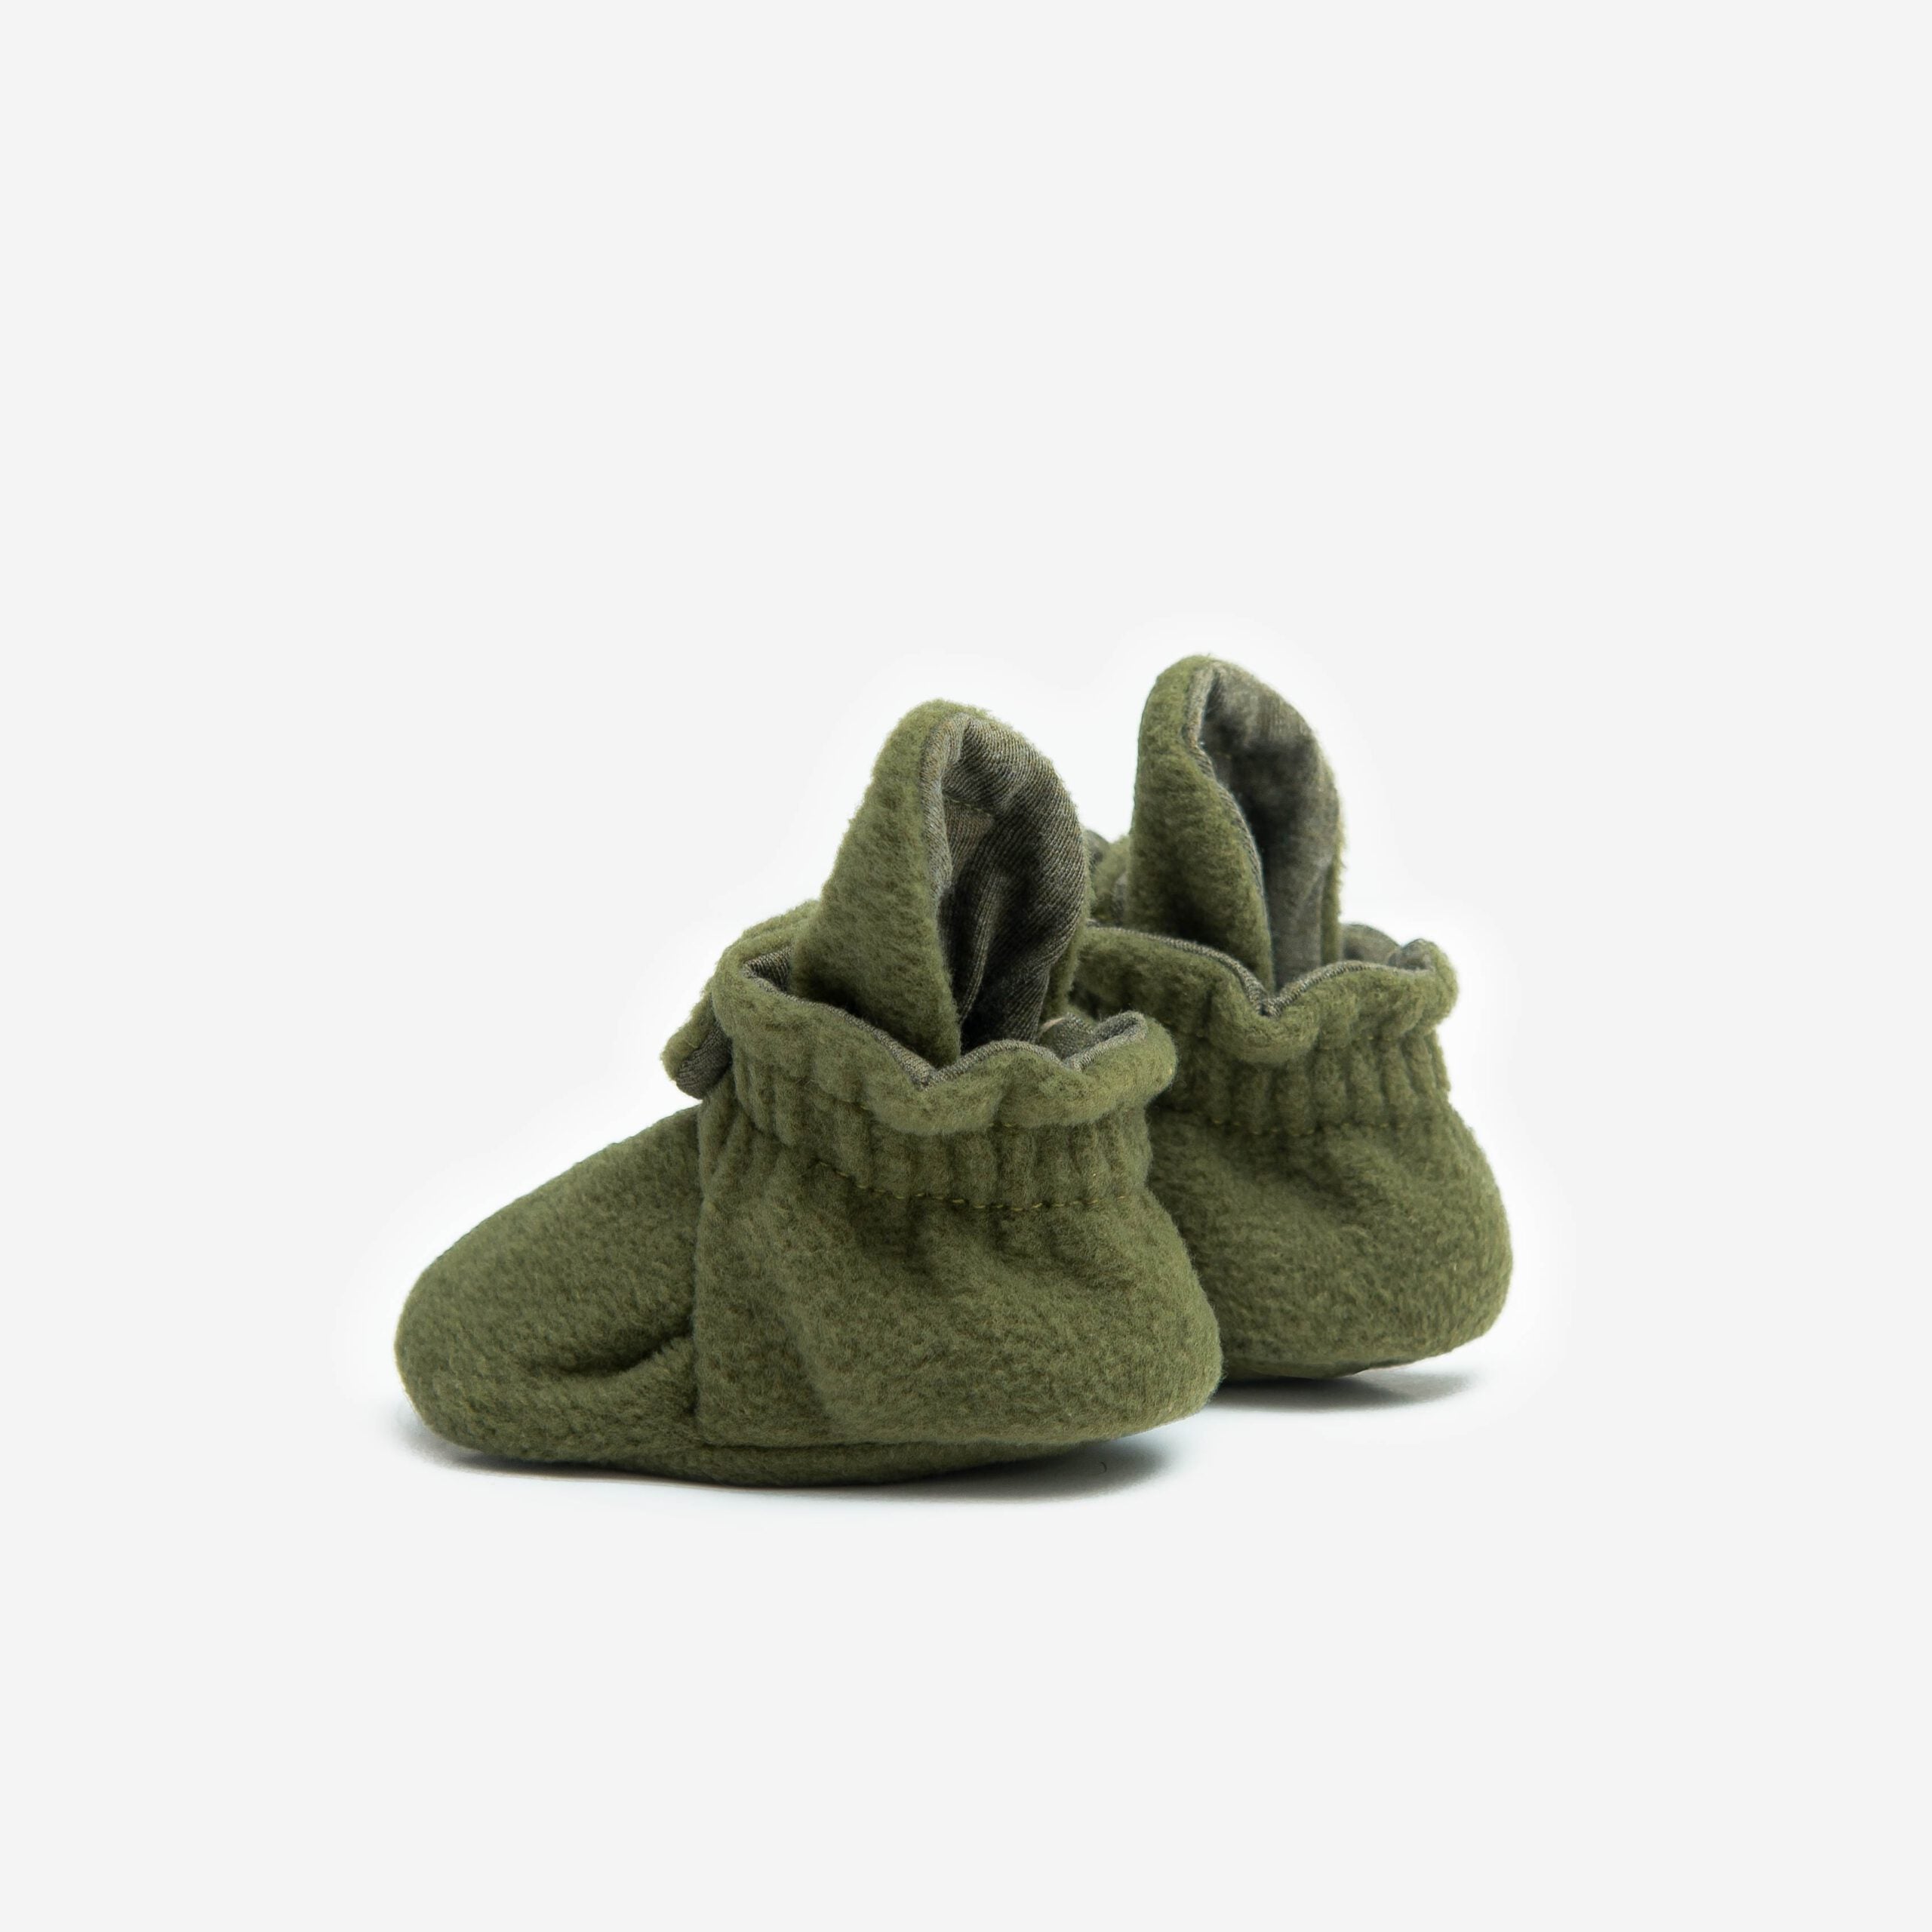 Baby Schuhe Olivgrün - Versandkostenfrei ab 70 Euro - Michel & Ida